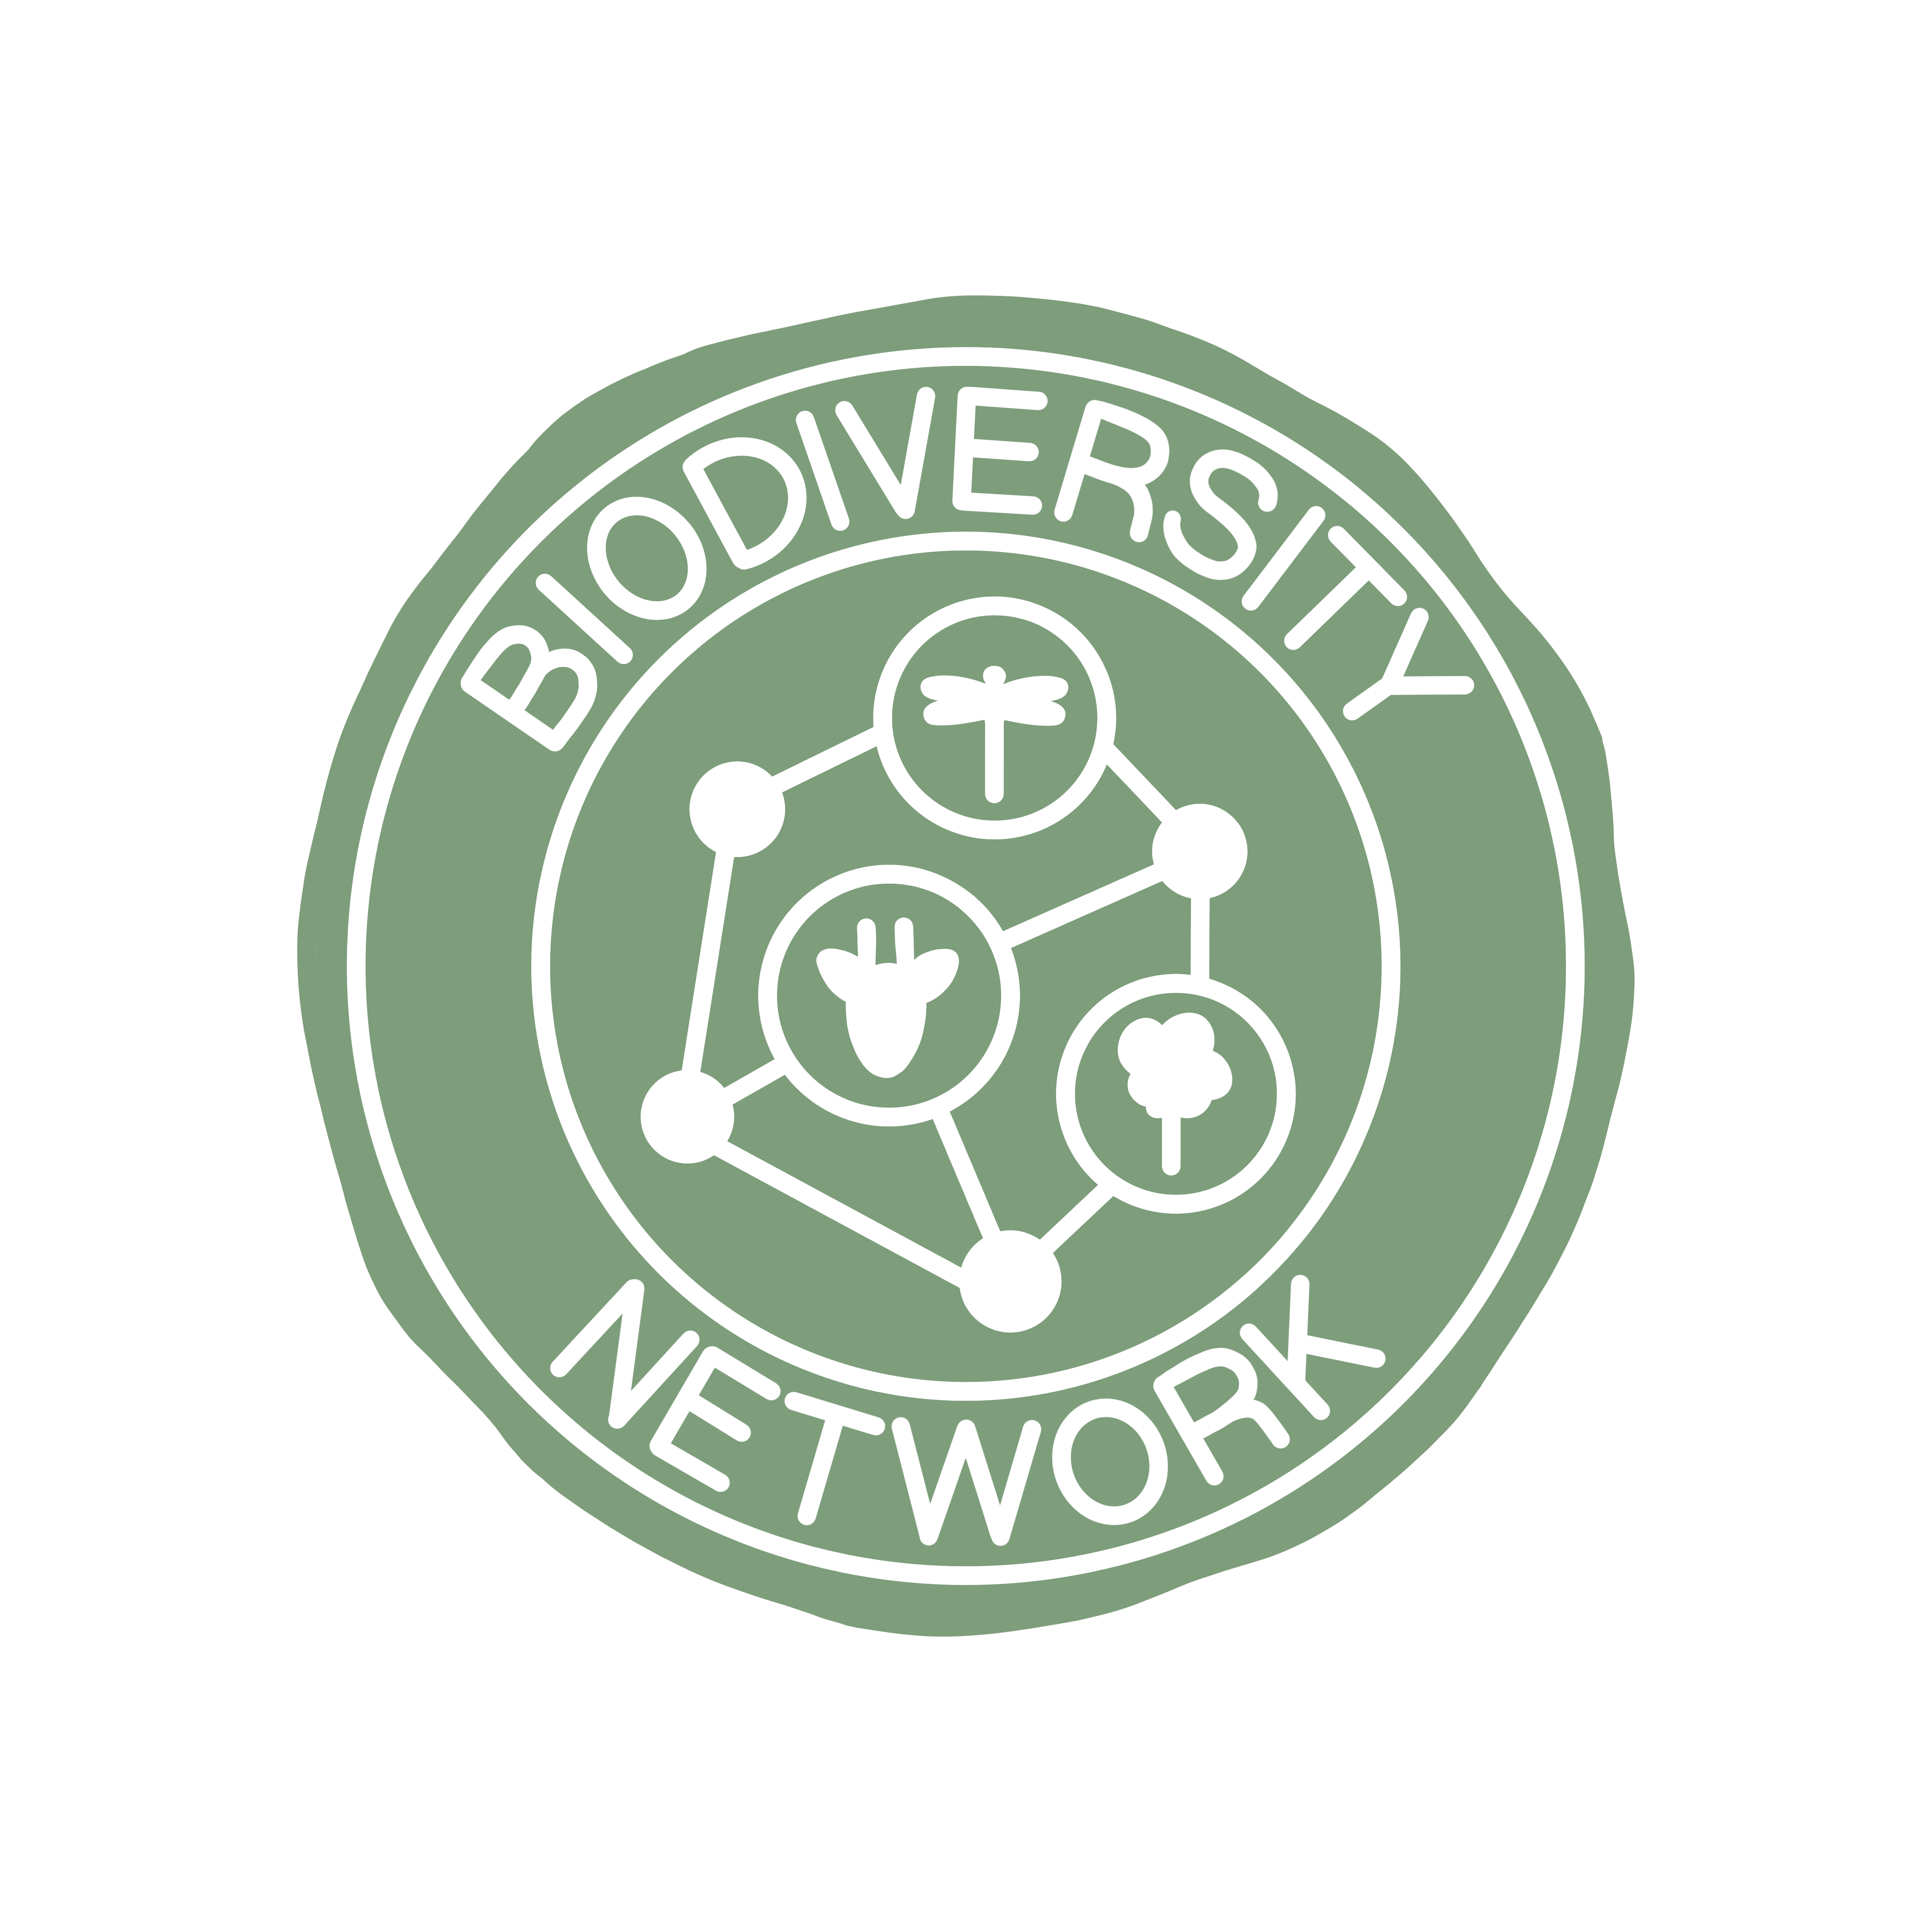 Biodiversity Network